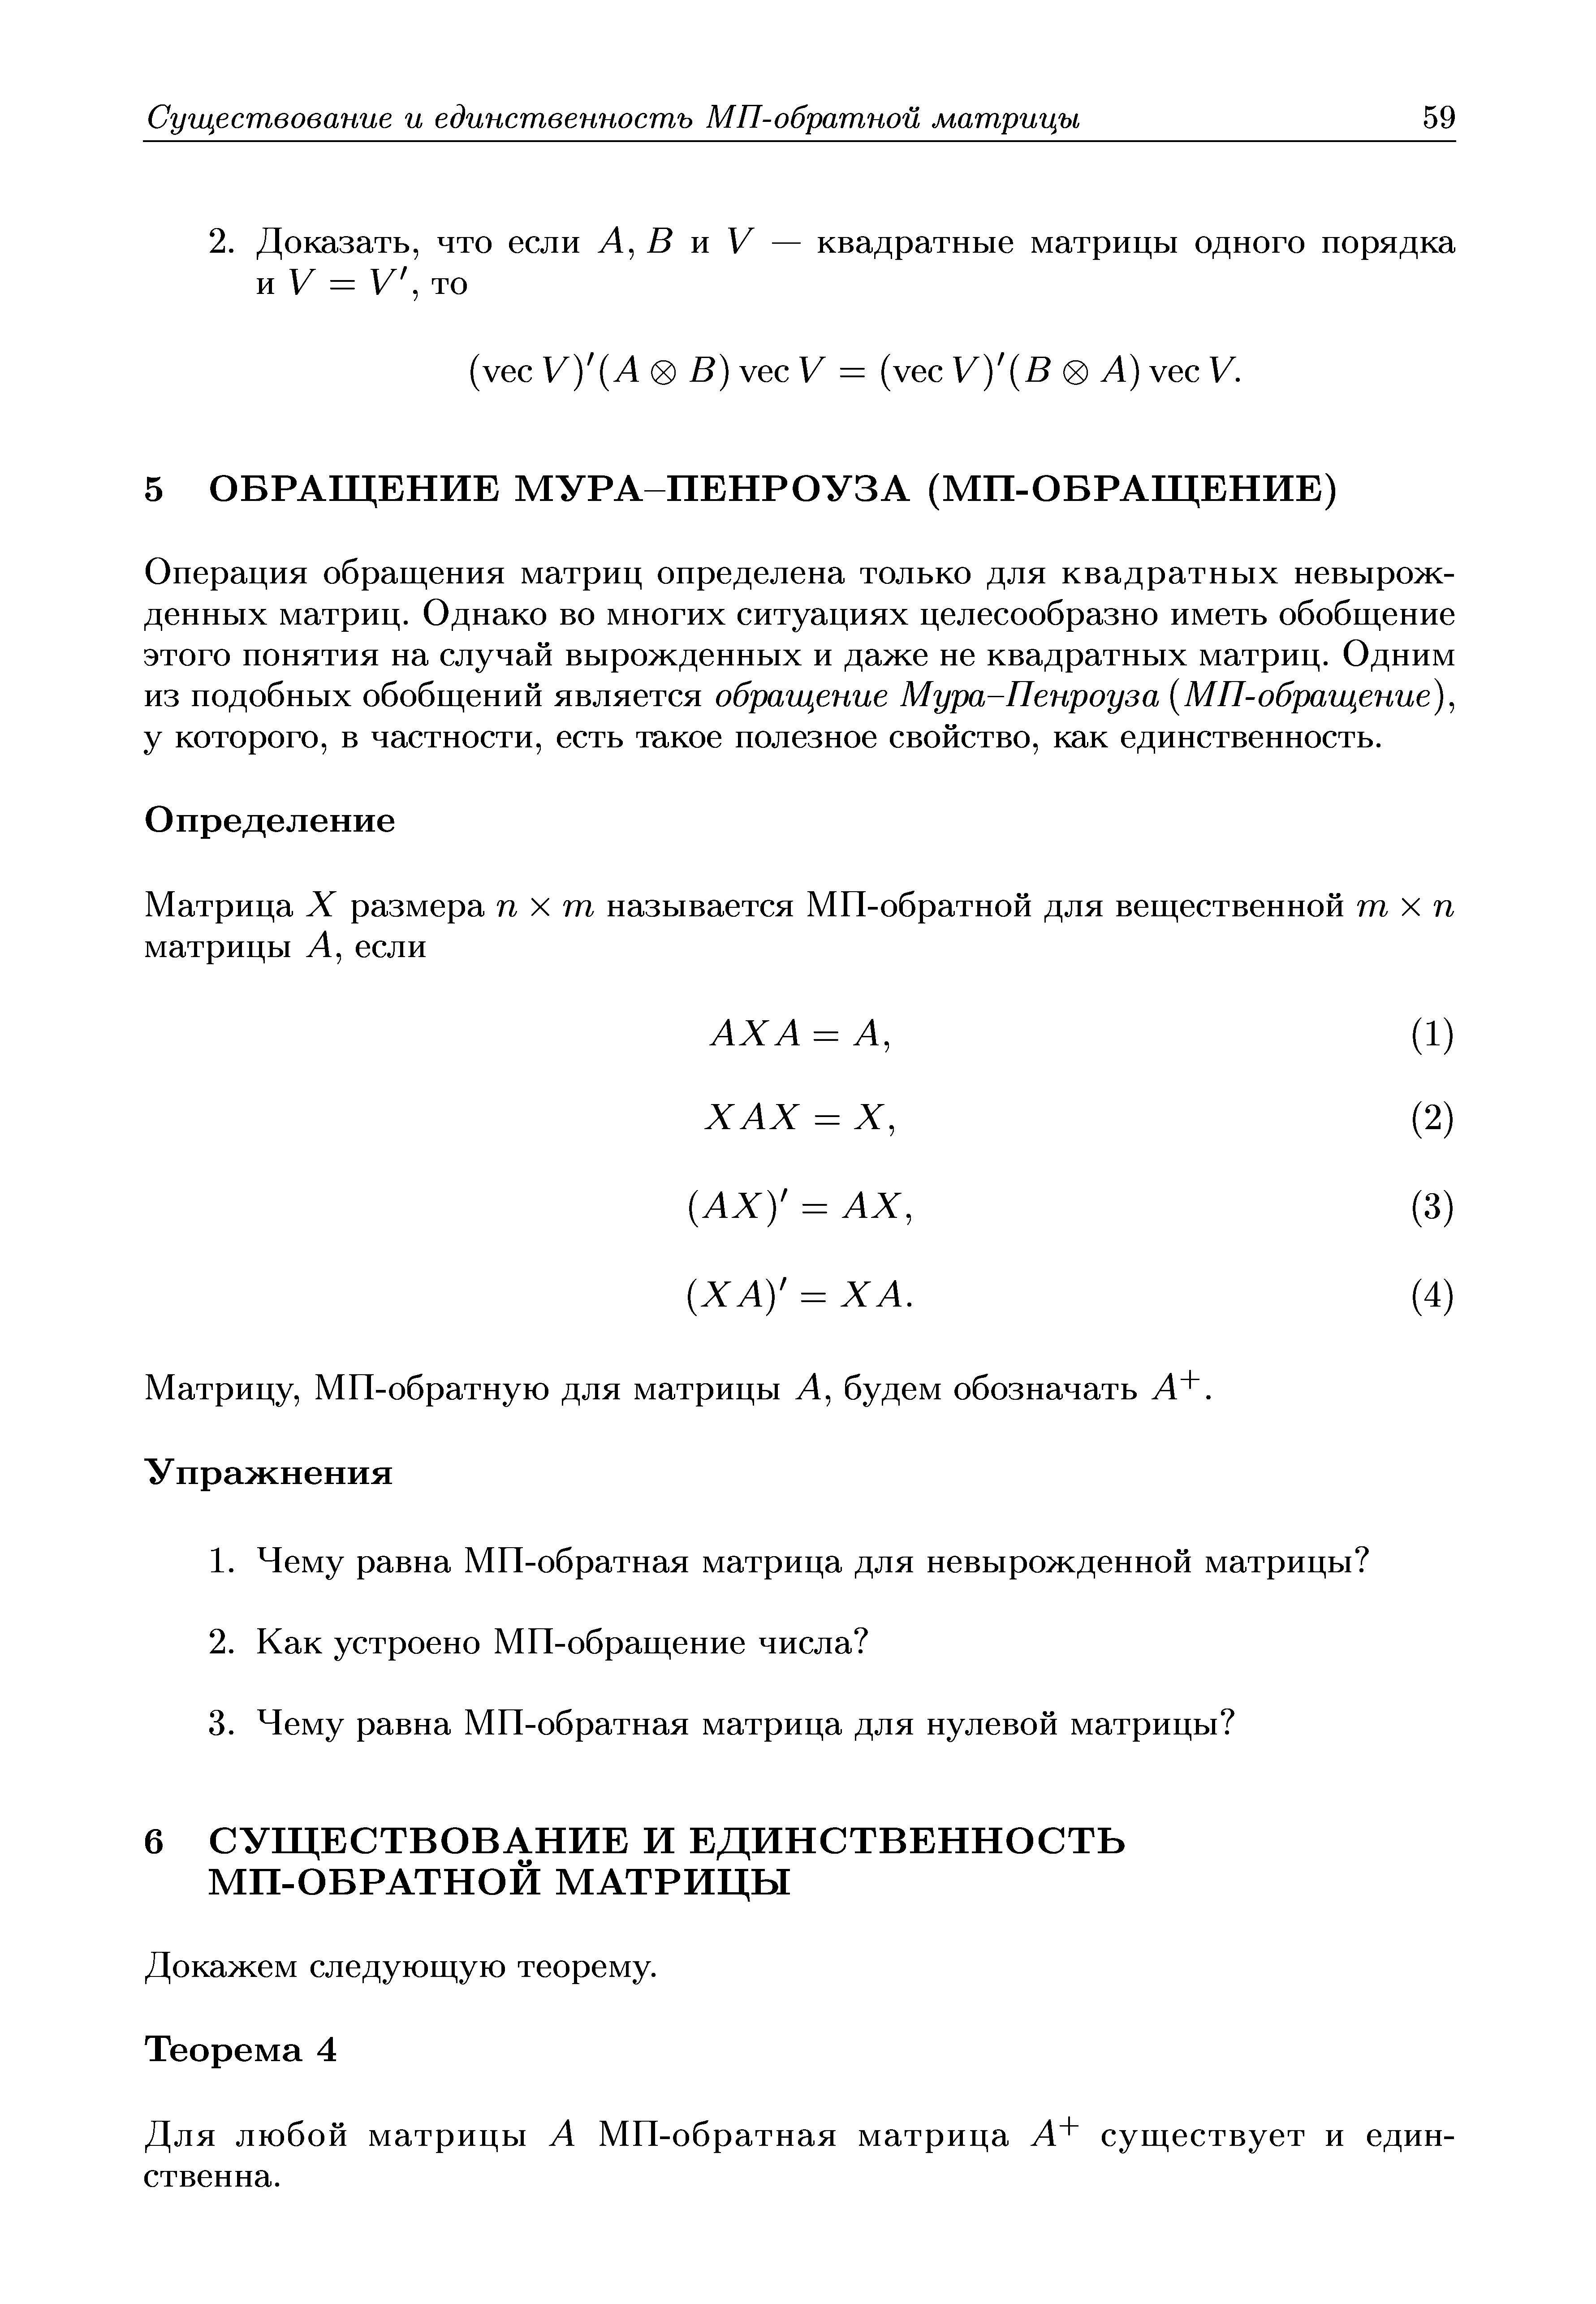 Для любой матрицы Л МП-обратная матрица Л+ существует и единственна.
